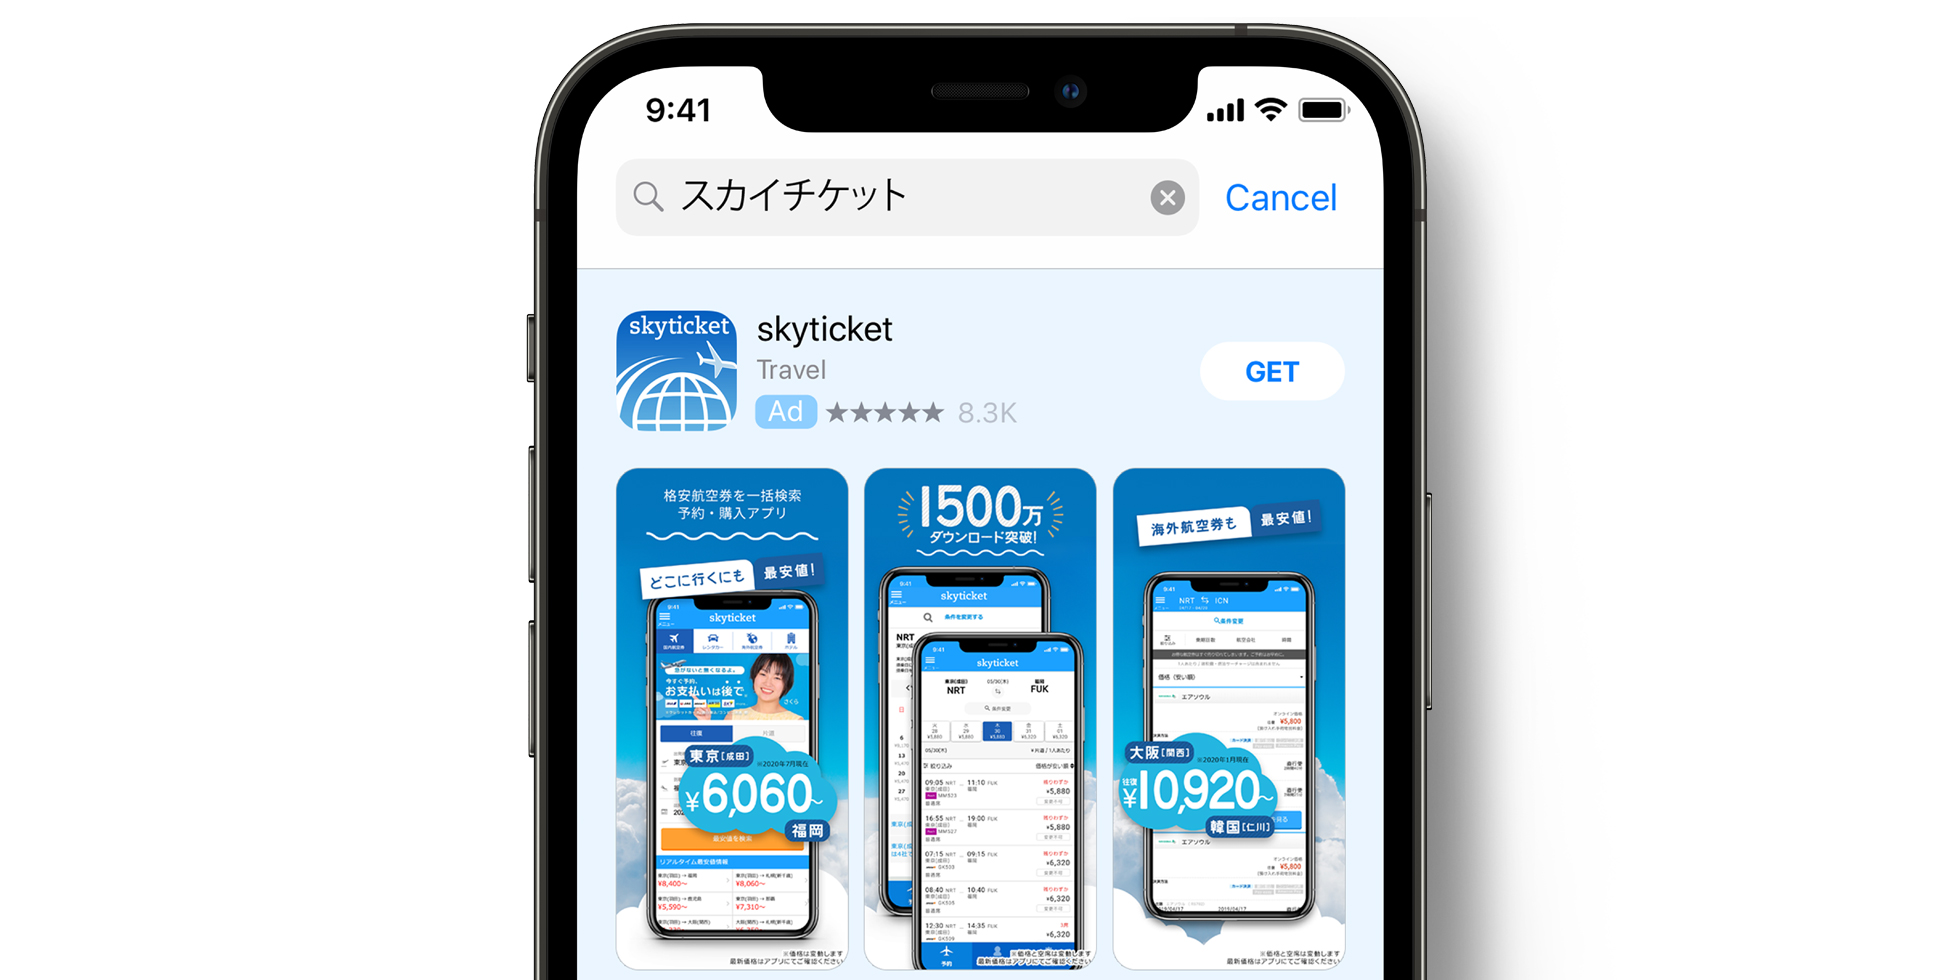 Реклама skyticket в App Store